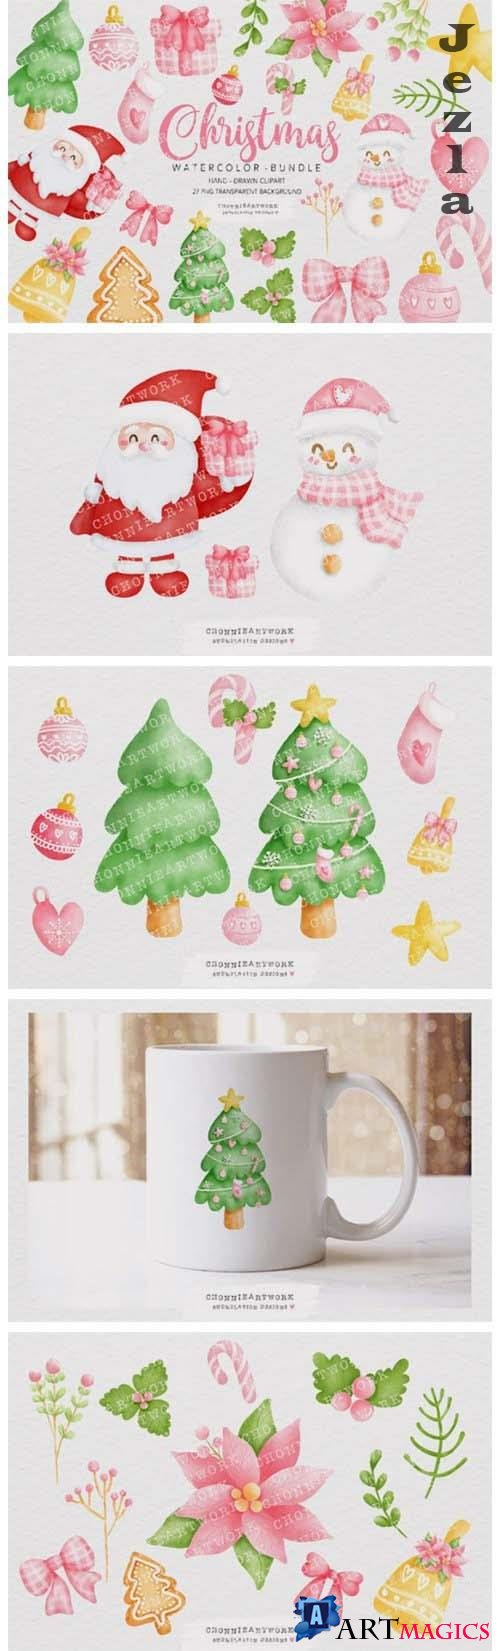 Watercolor Christmas Clipart Bundle